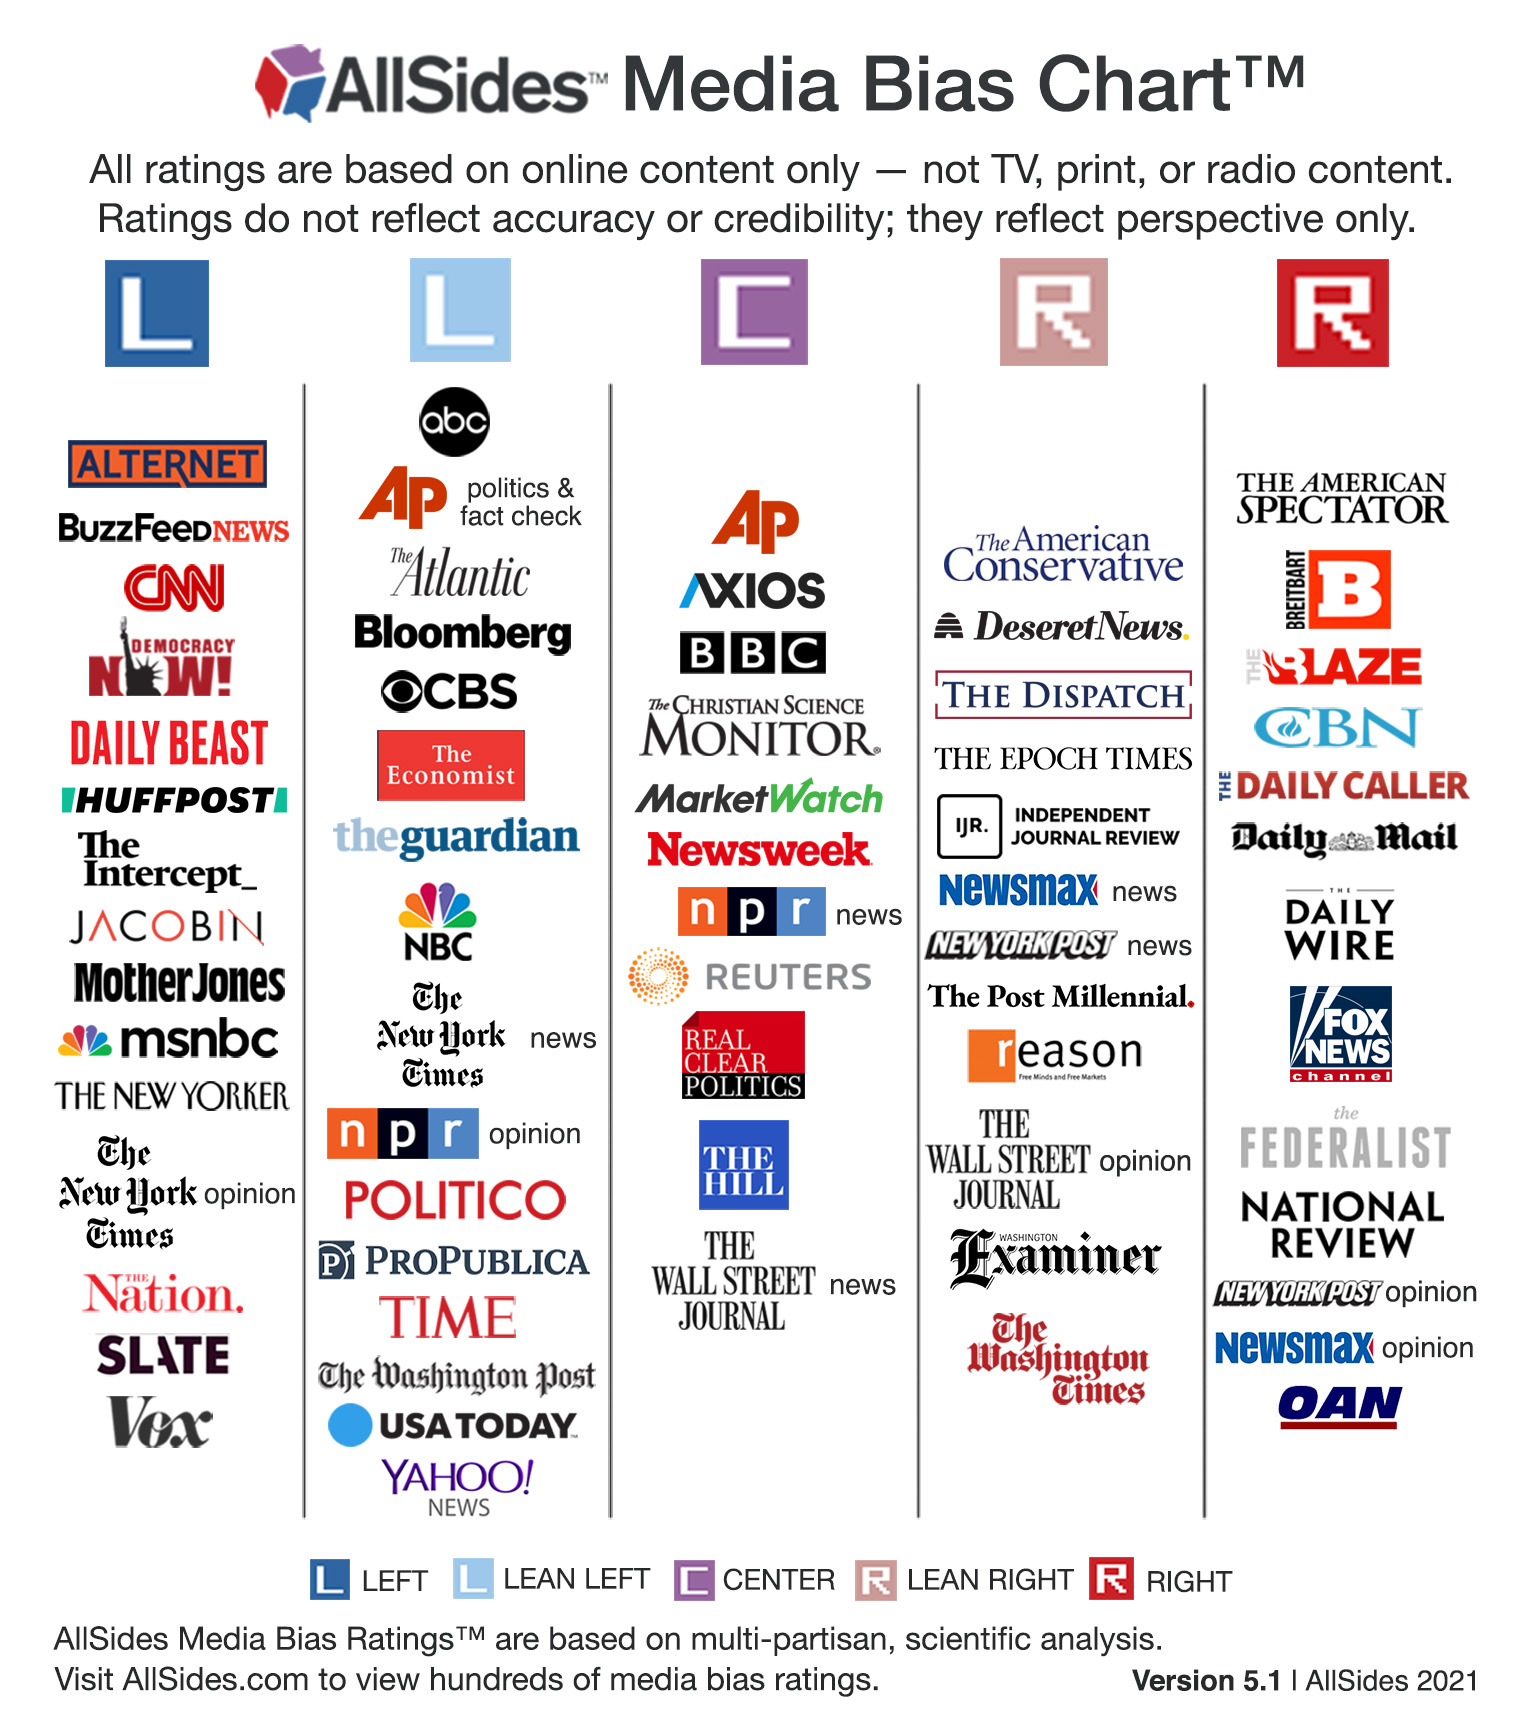 AllSides Media Bias Chart Version 5.1